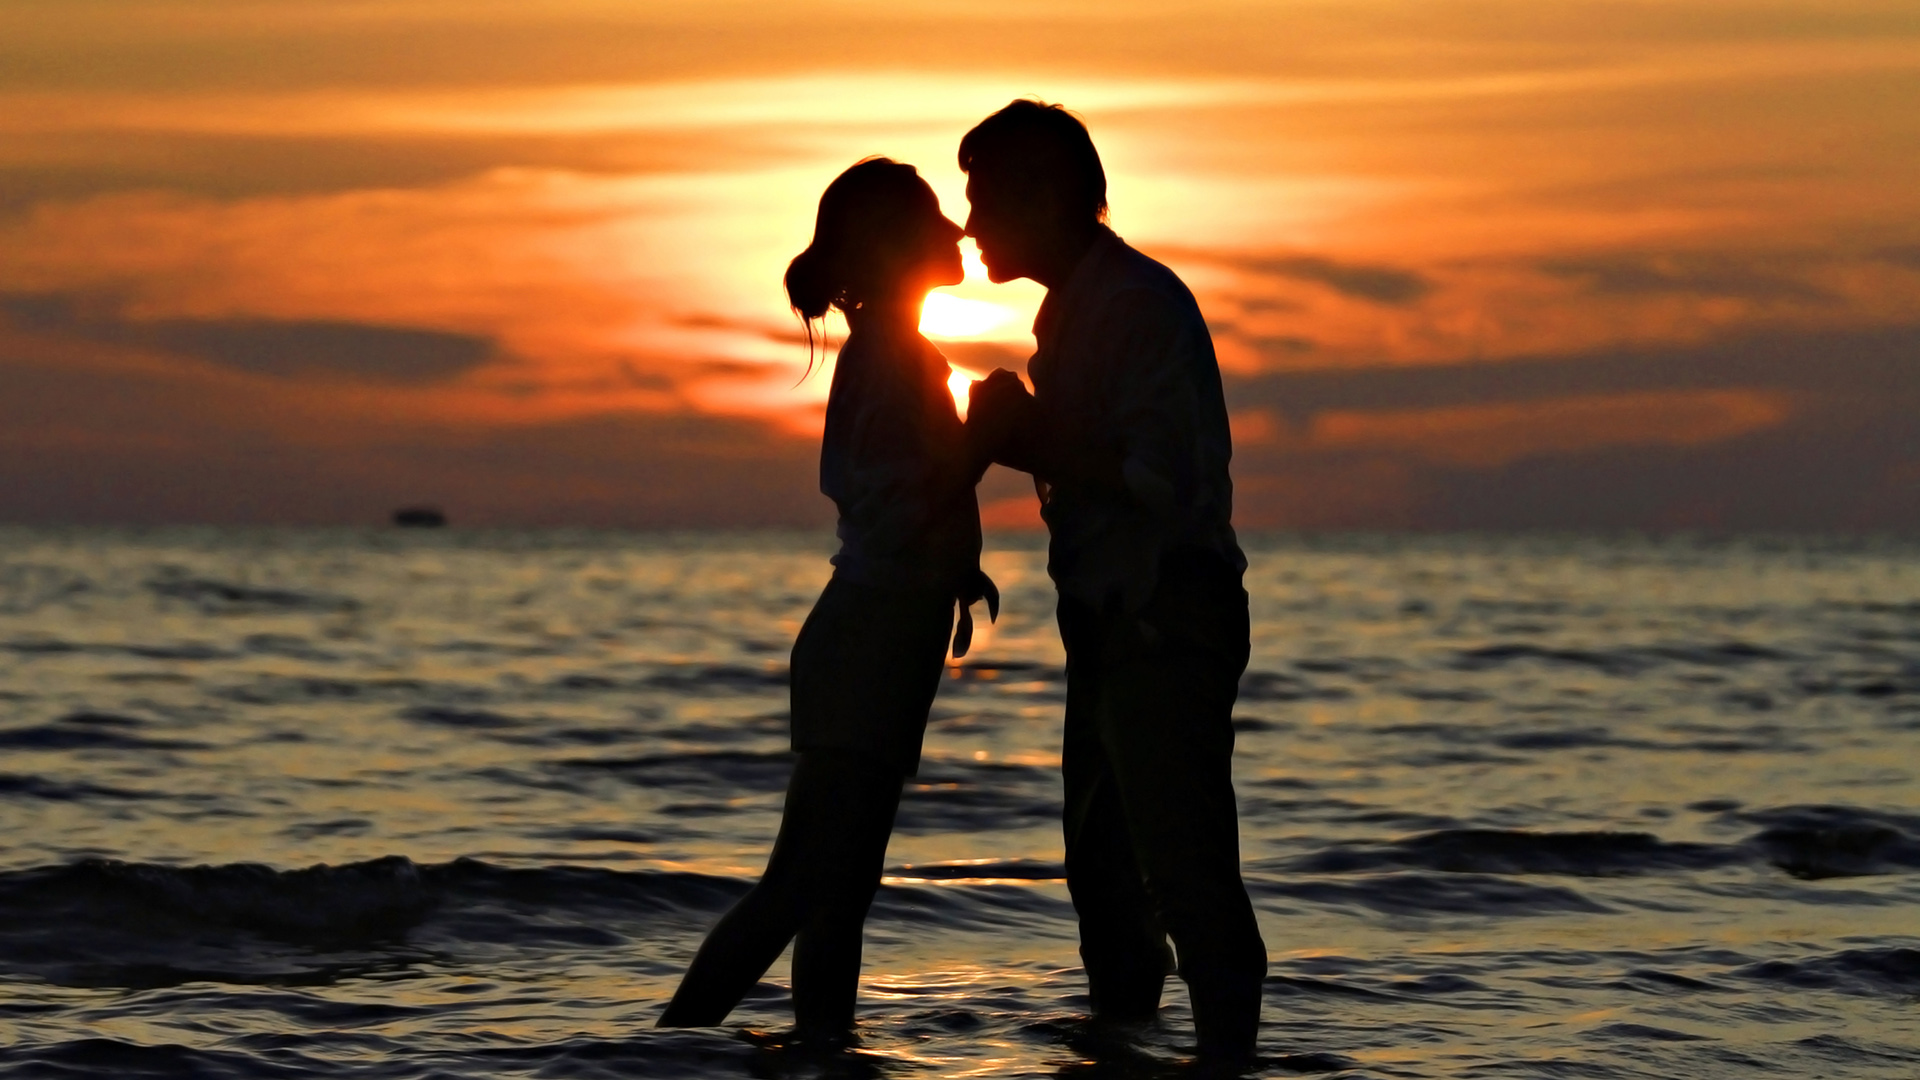 海边,日落,爱情,浪漫,夫妇,接吻,幸福恋人,桌面壁纸